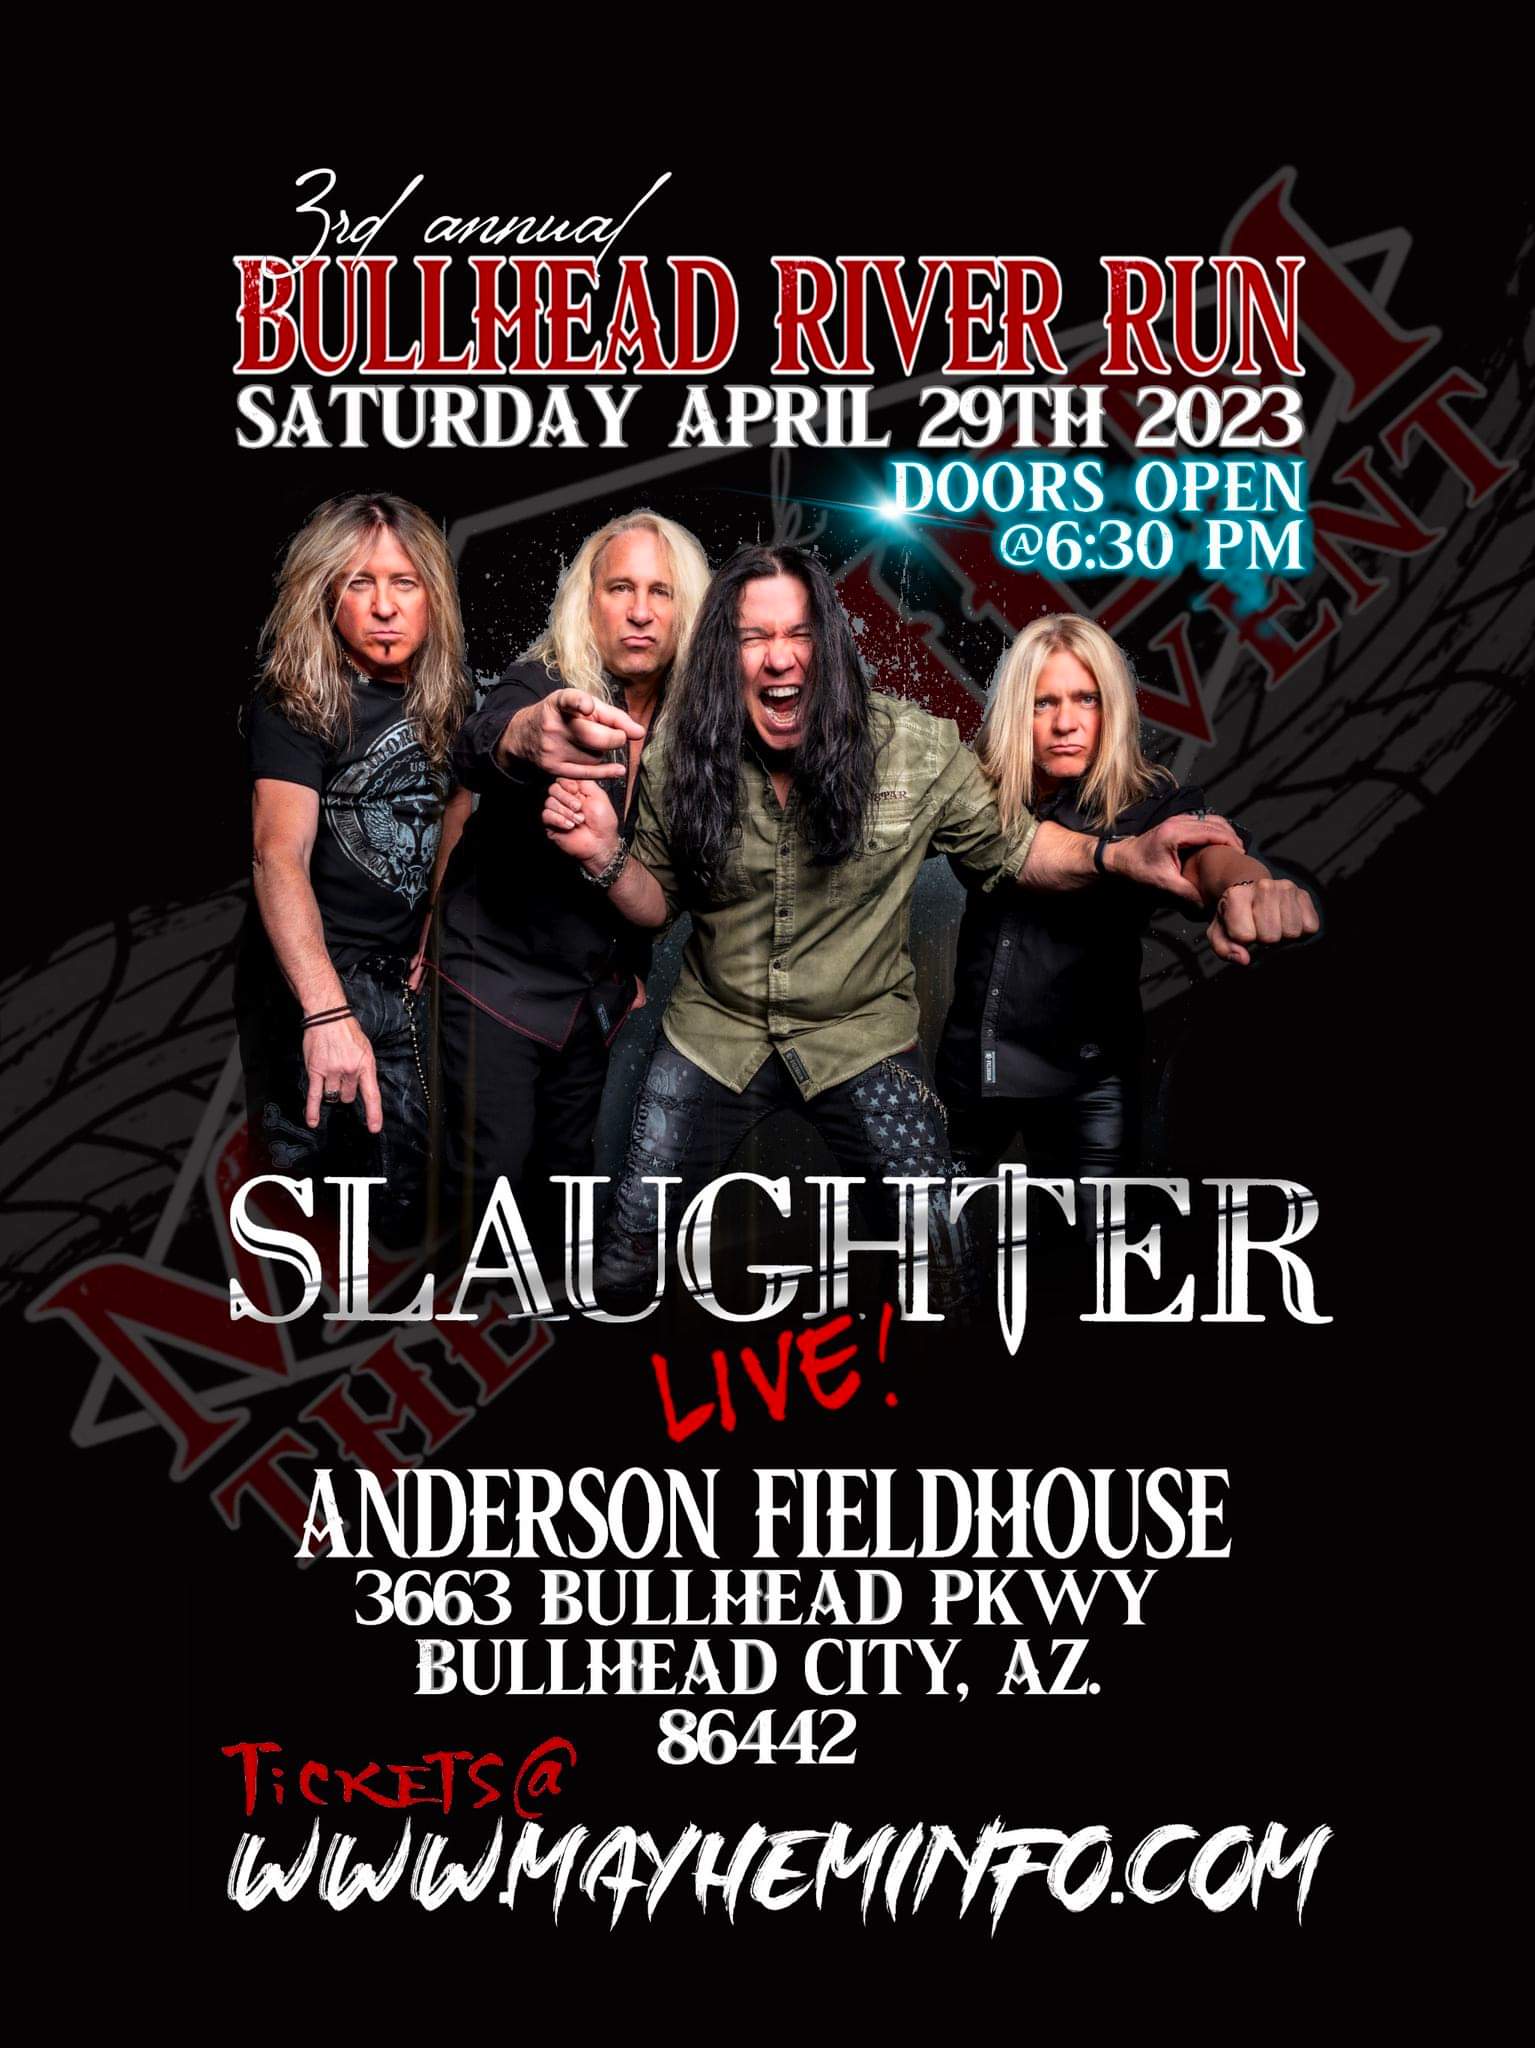 Bullhead River Run -Slaughter Live Concert